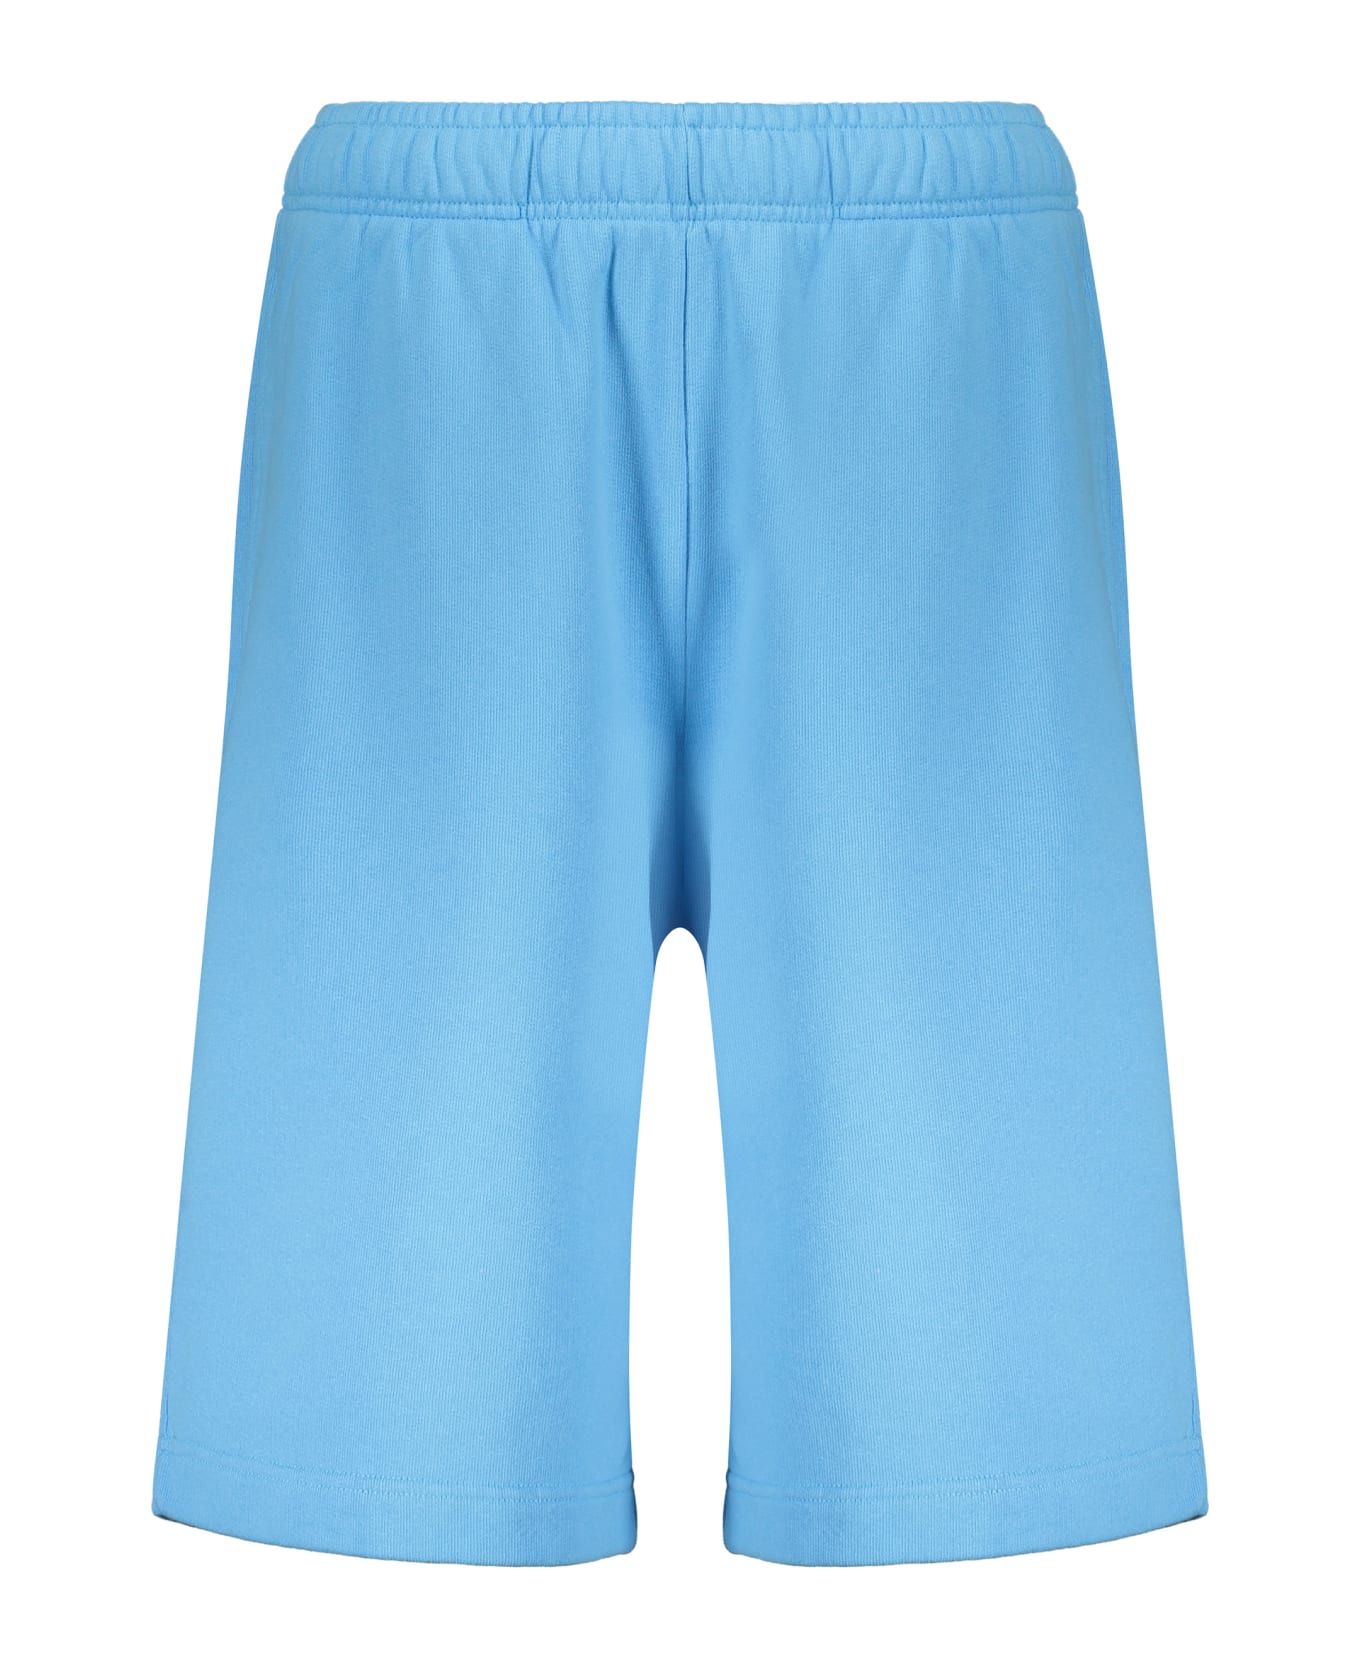 AMBUSH Bermuda Shorts - Light Blue ショートパンツ